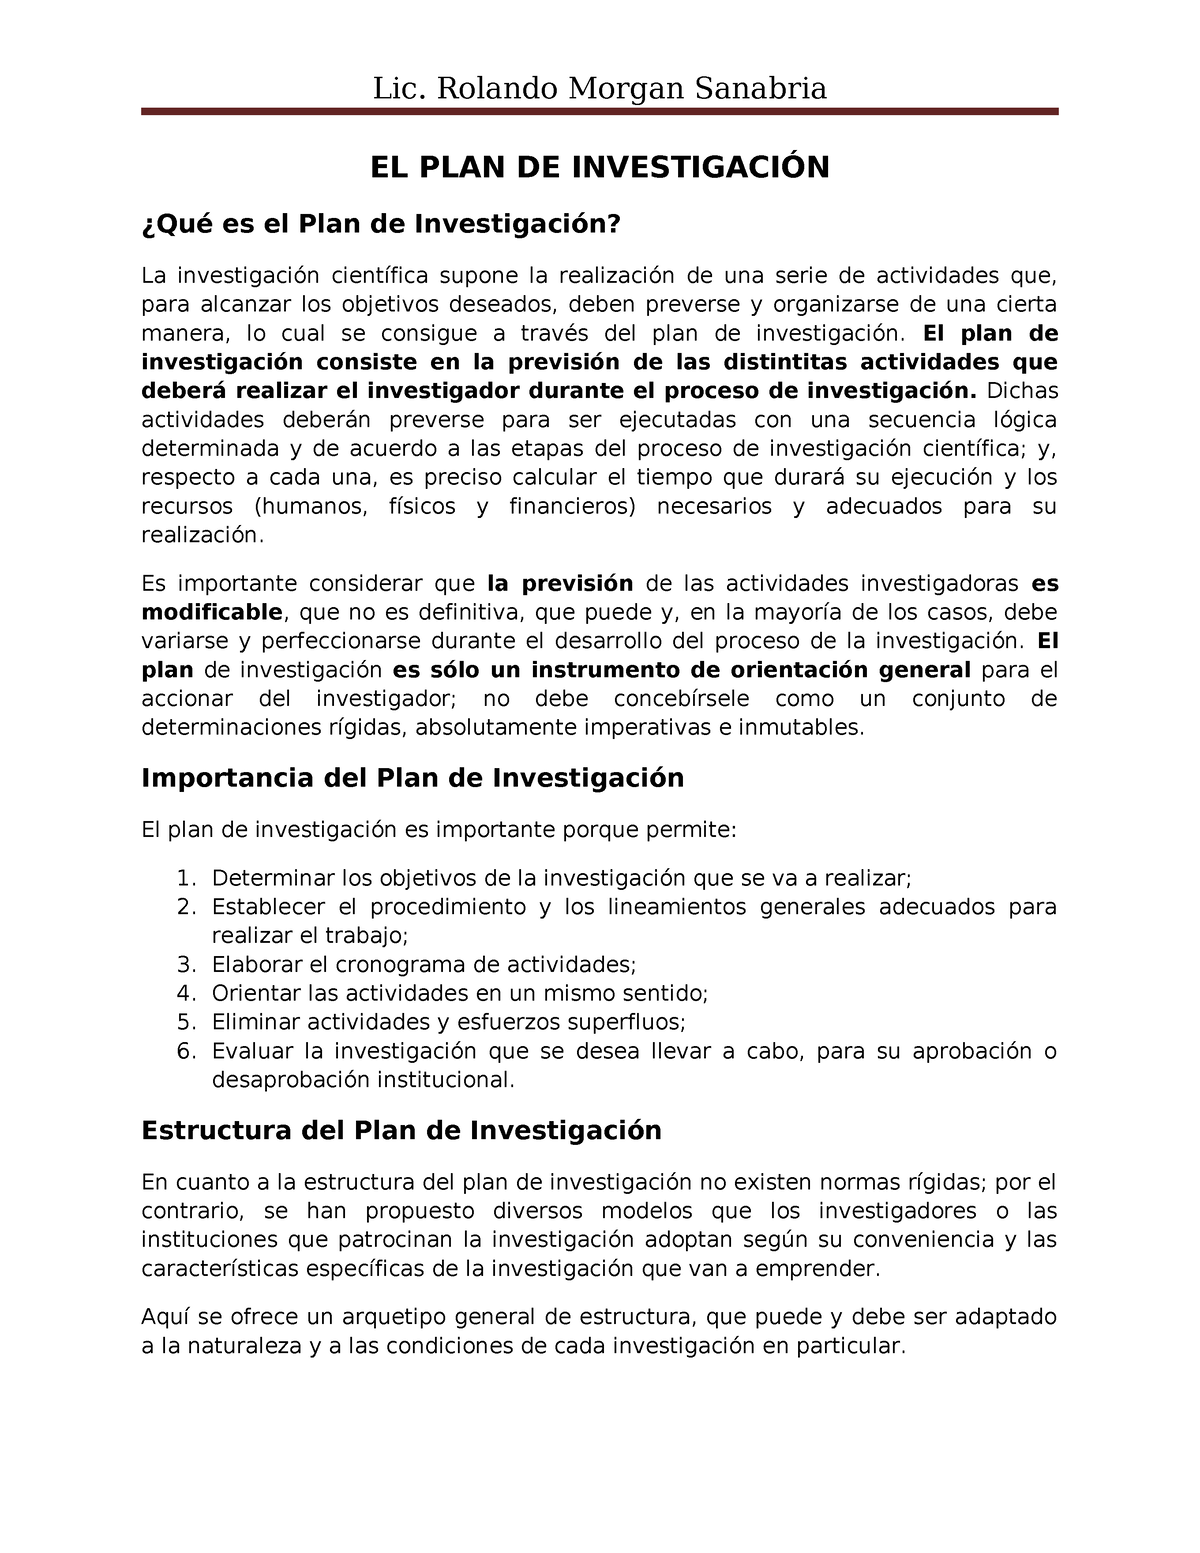 EL-PLAN-DE- Investigacion Morgan - EL PLAN DE INVESTIGACIÓN ¿Qué es el ...